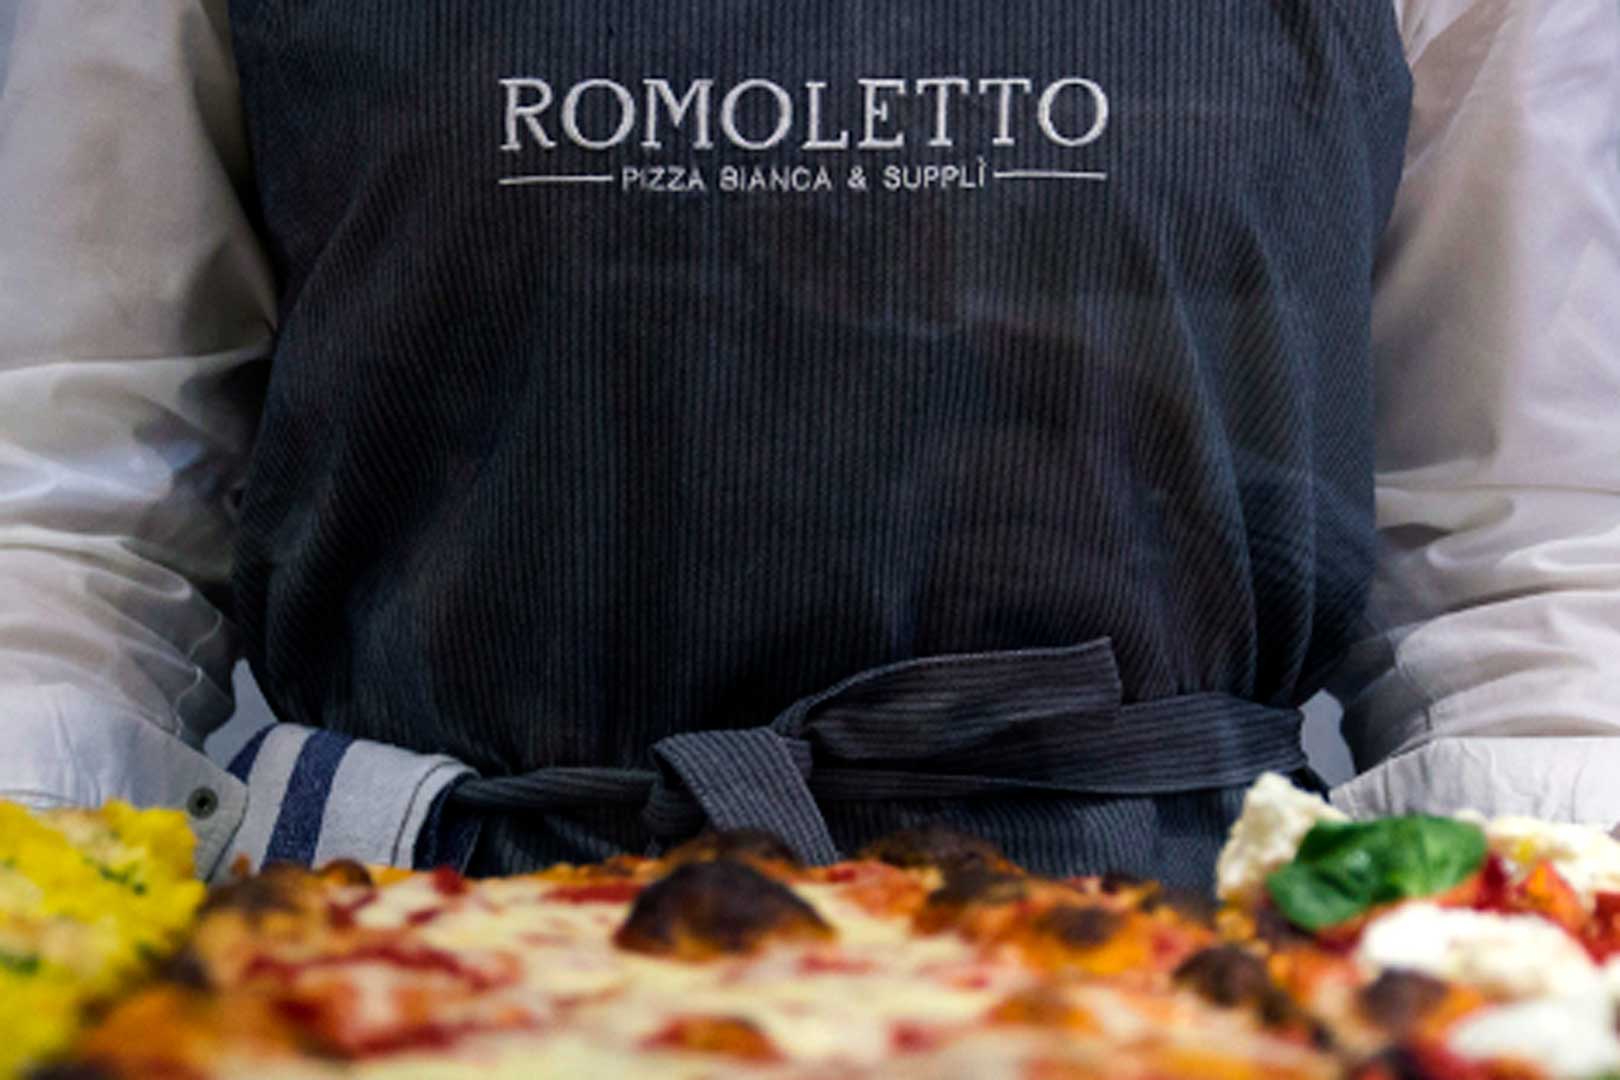 Romoletto - Milano